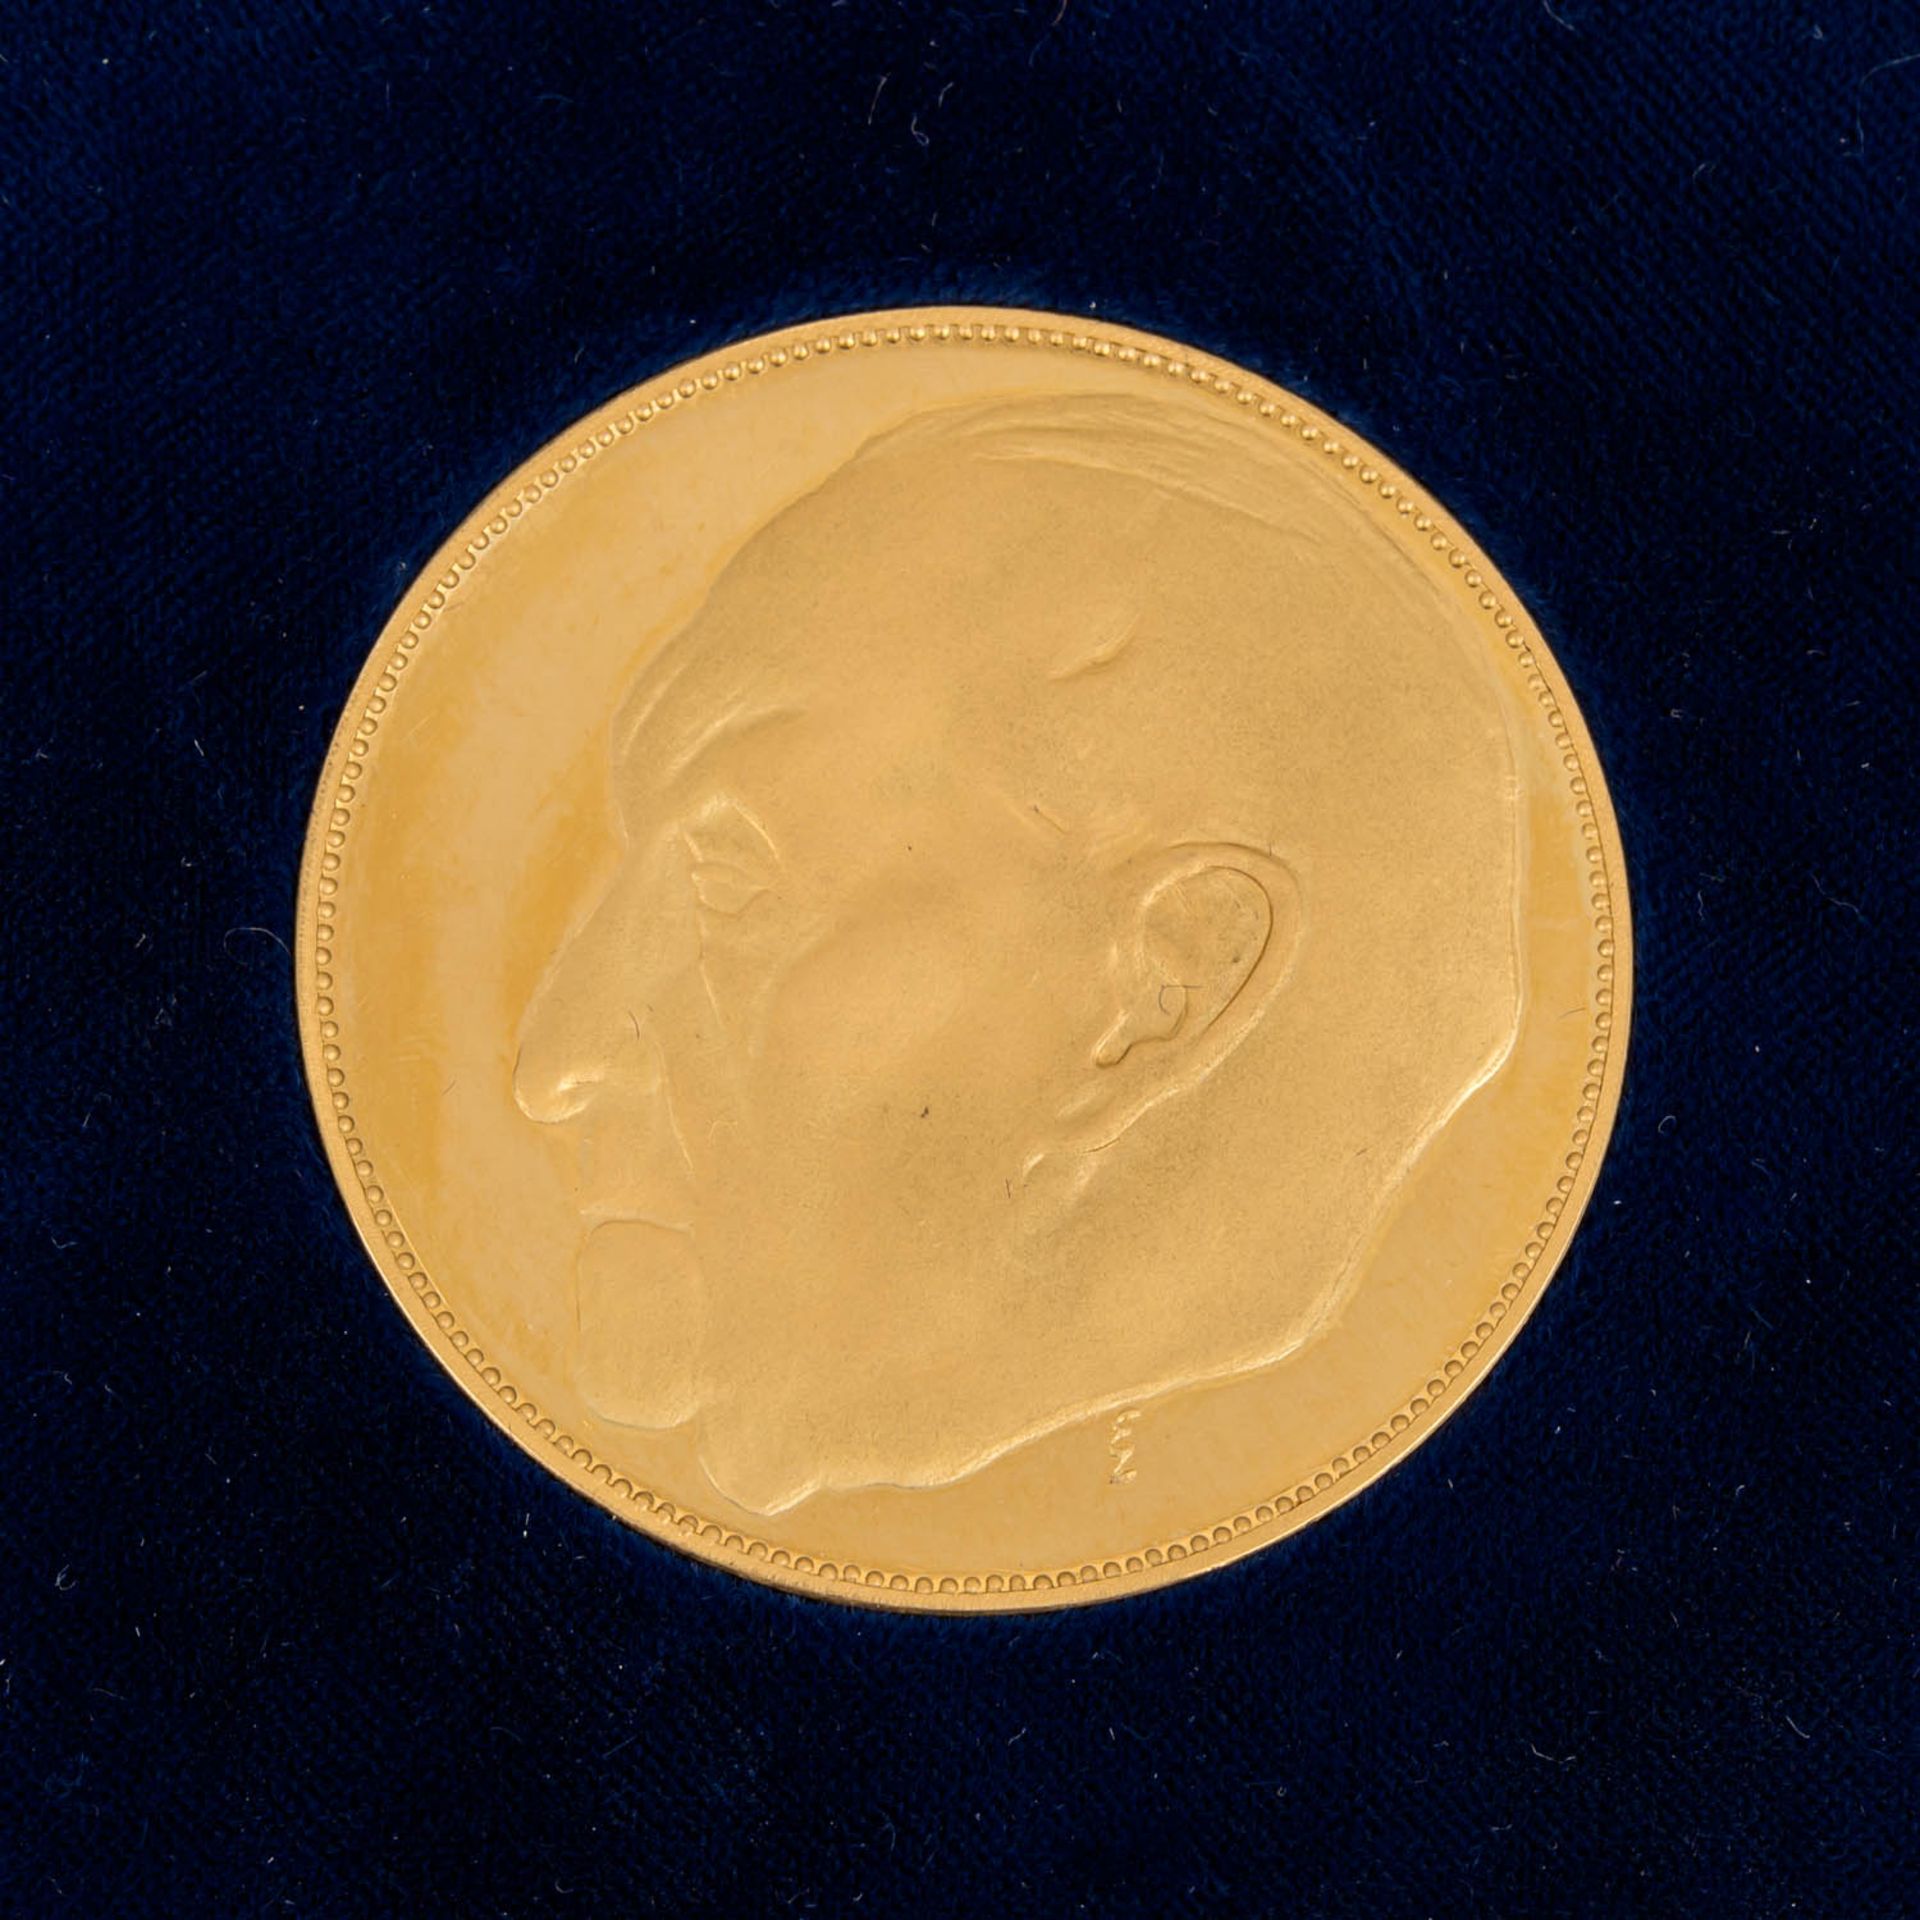 BRD - Goldene Gedenkmedaille zu 20 Dukaten 1957, - Image 2 of 3